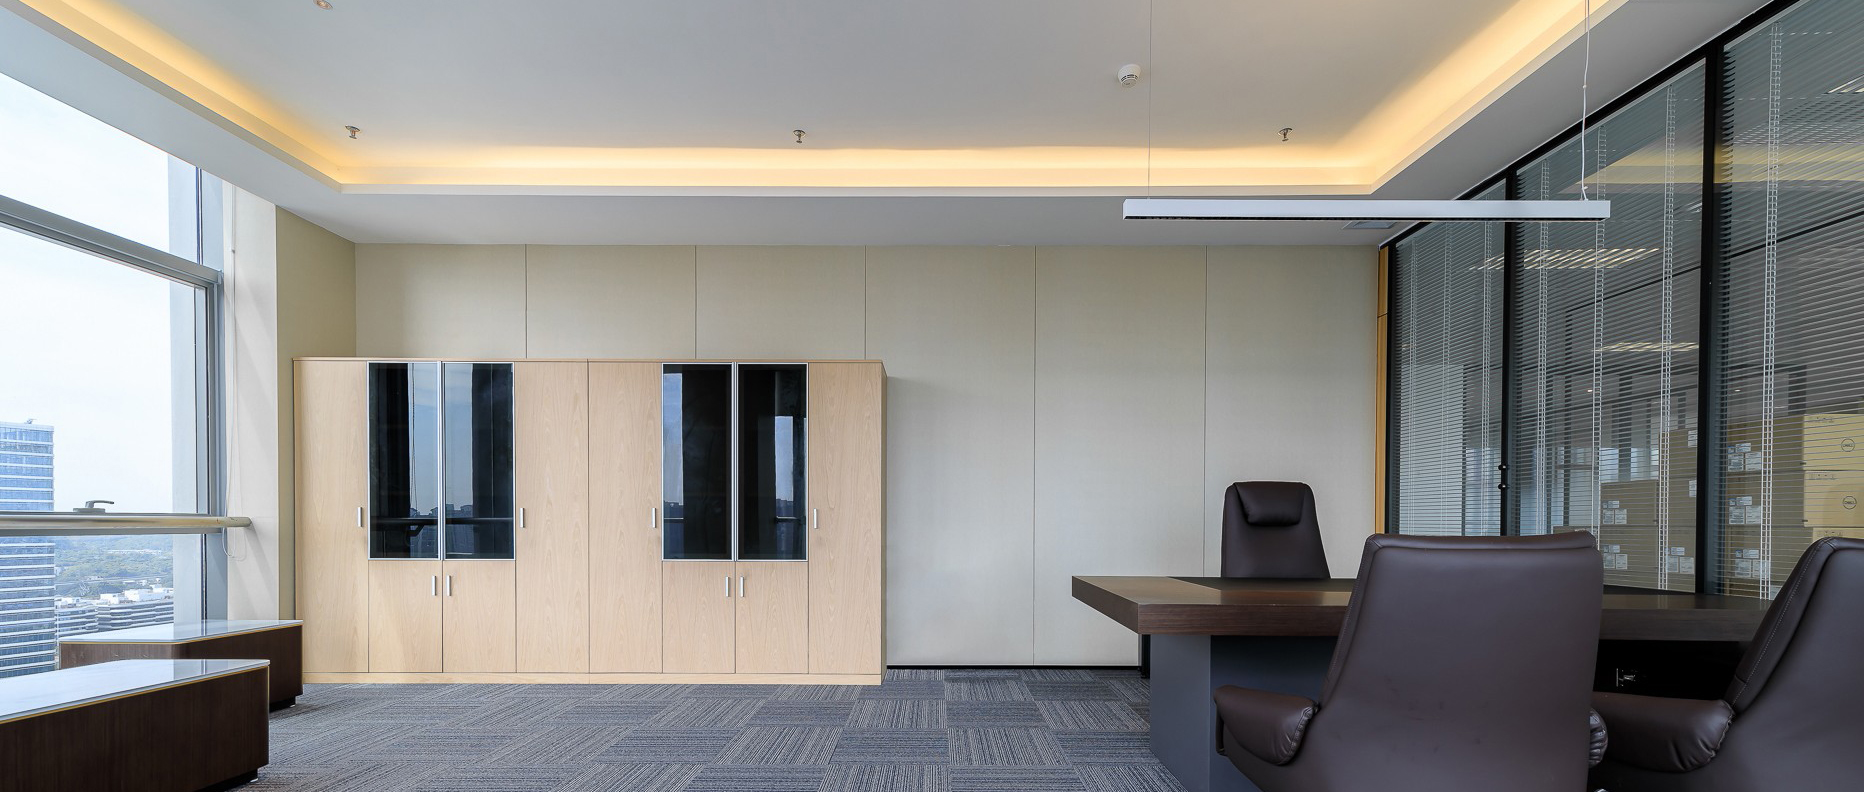 老板办公空间设计的设计方案有什么特点？每平方米办公楼的装修价格是多少？ 